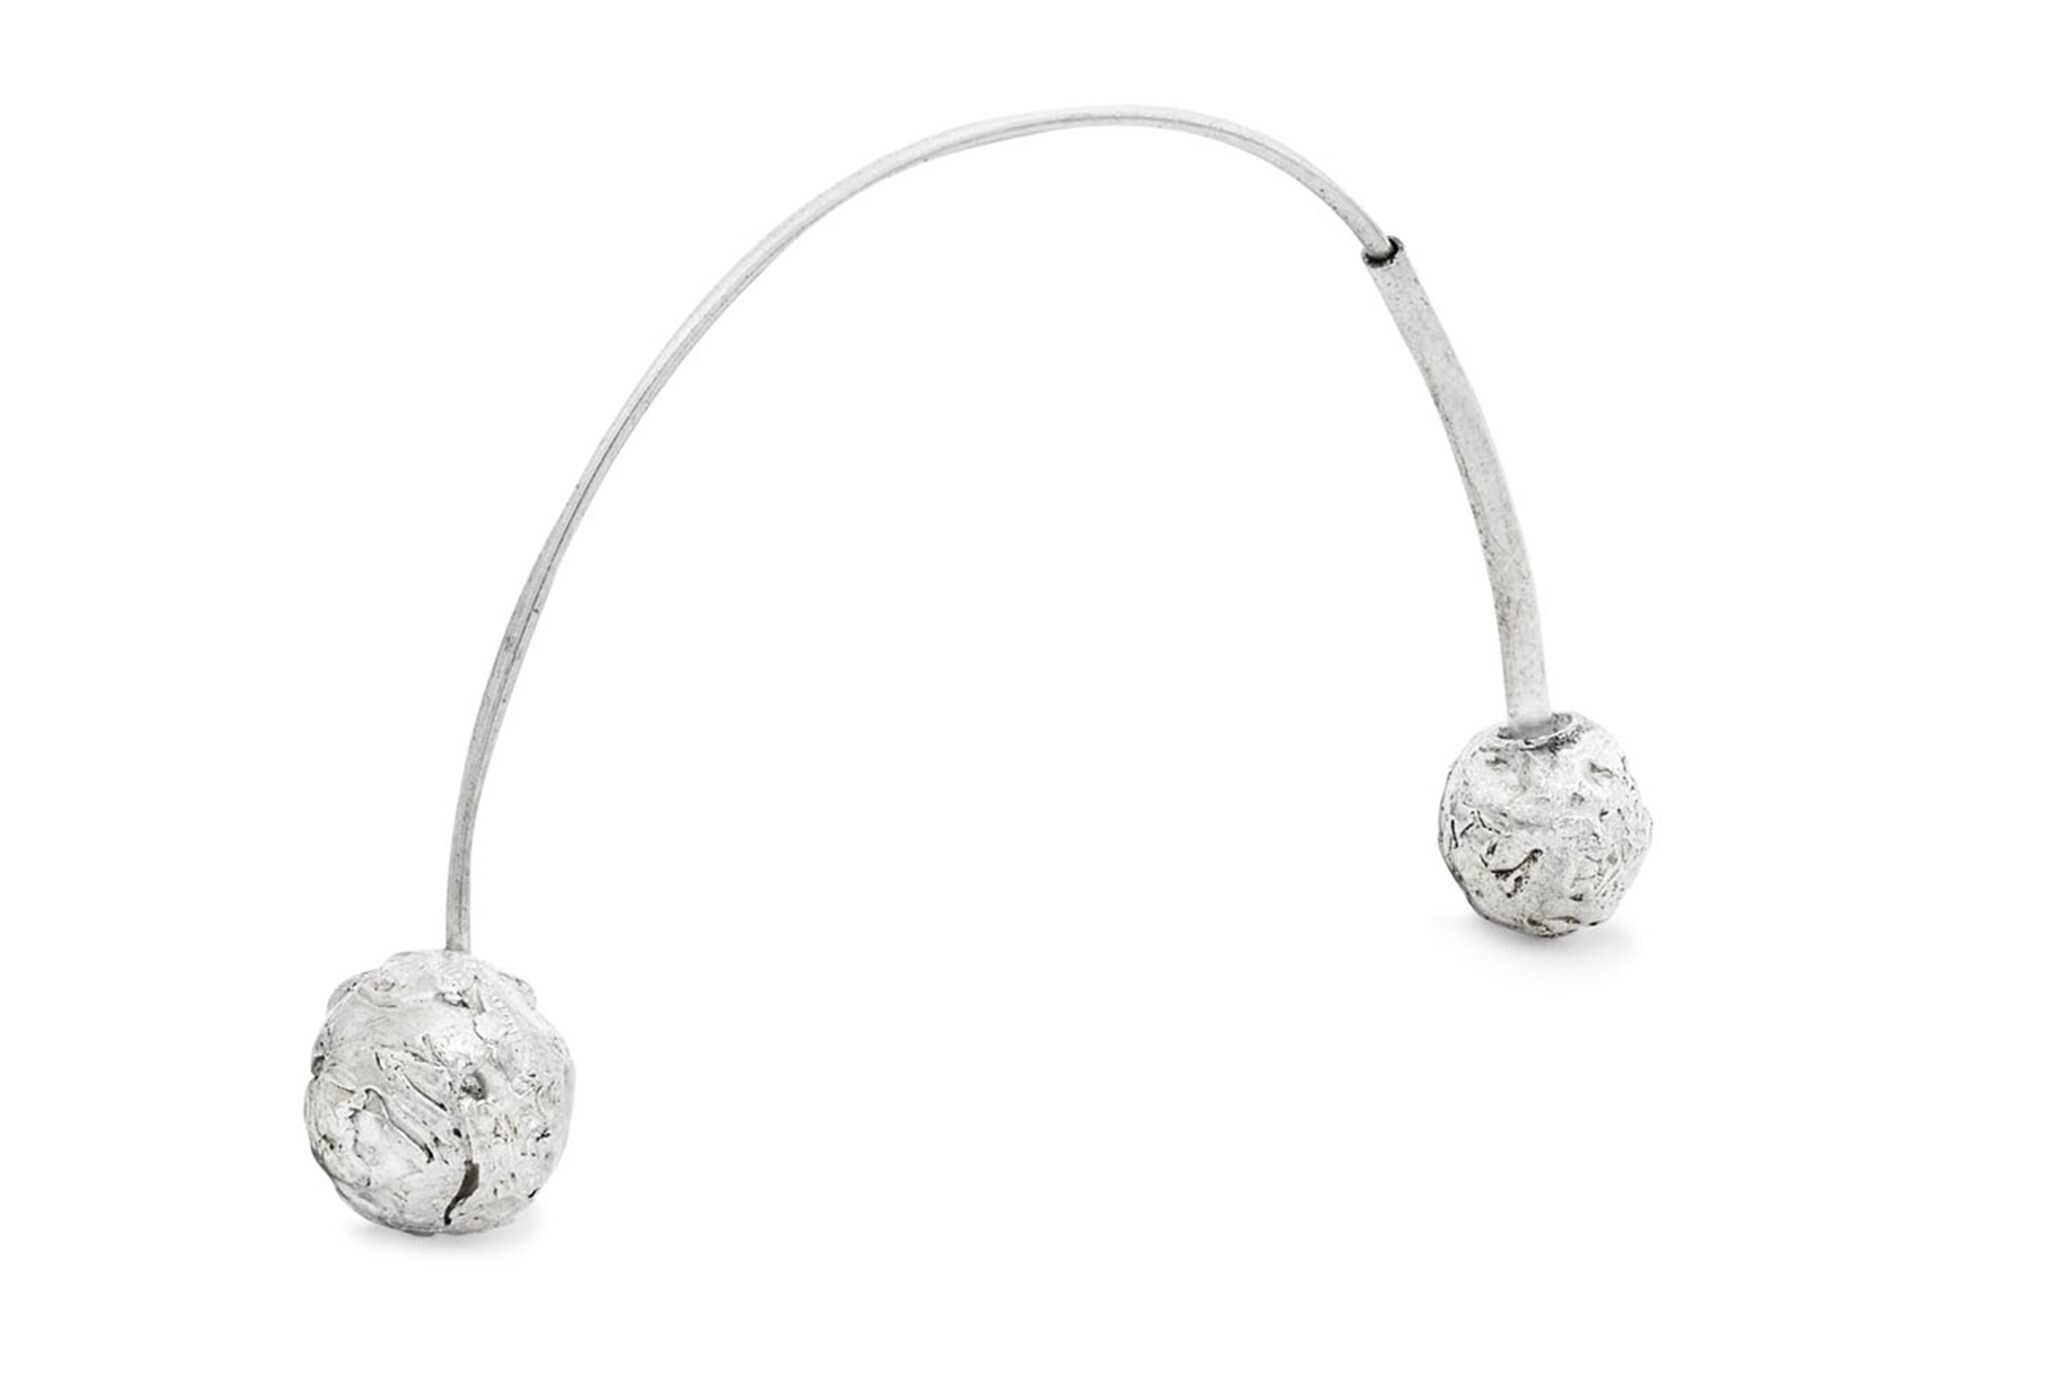 Laura Micheli. Mono orecchino in argento lavorato a mano con sfere simmetriche.